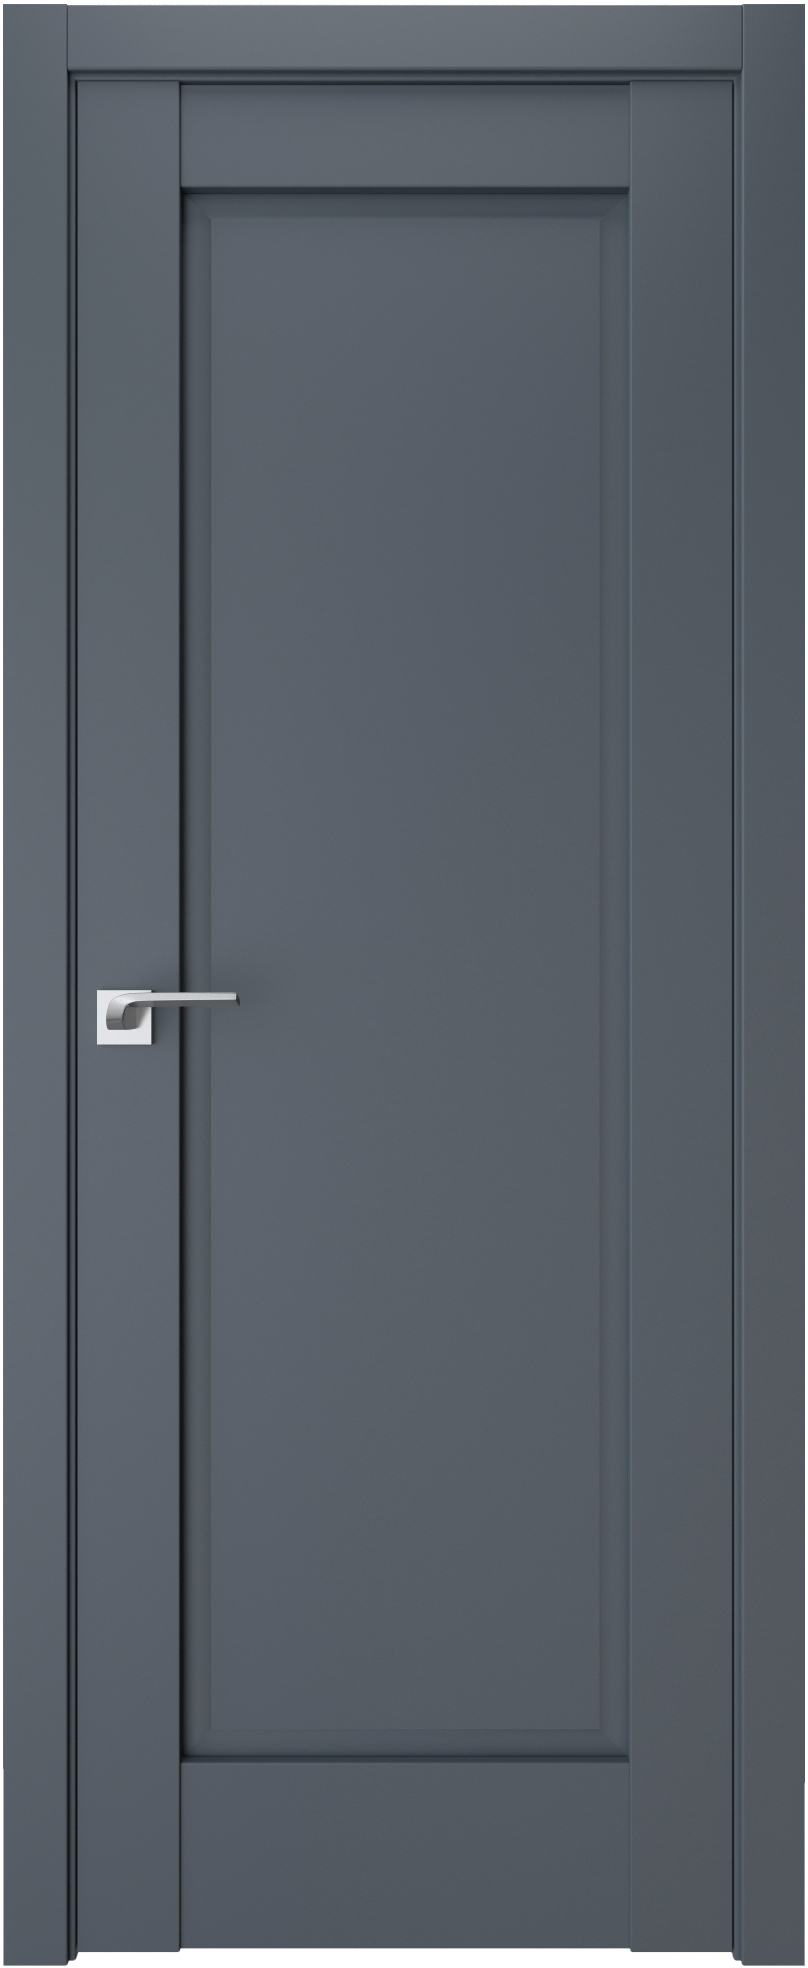 Двери модель 605 Антрацит (глухая)